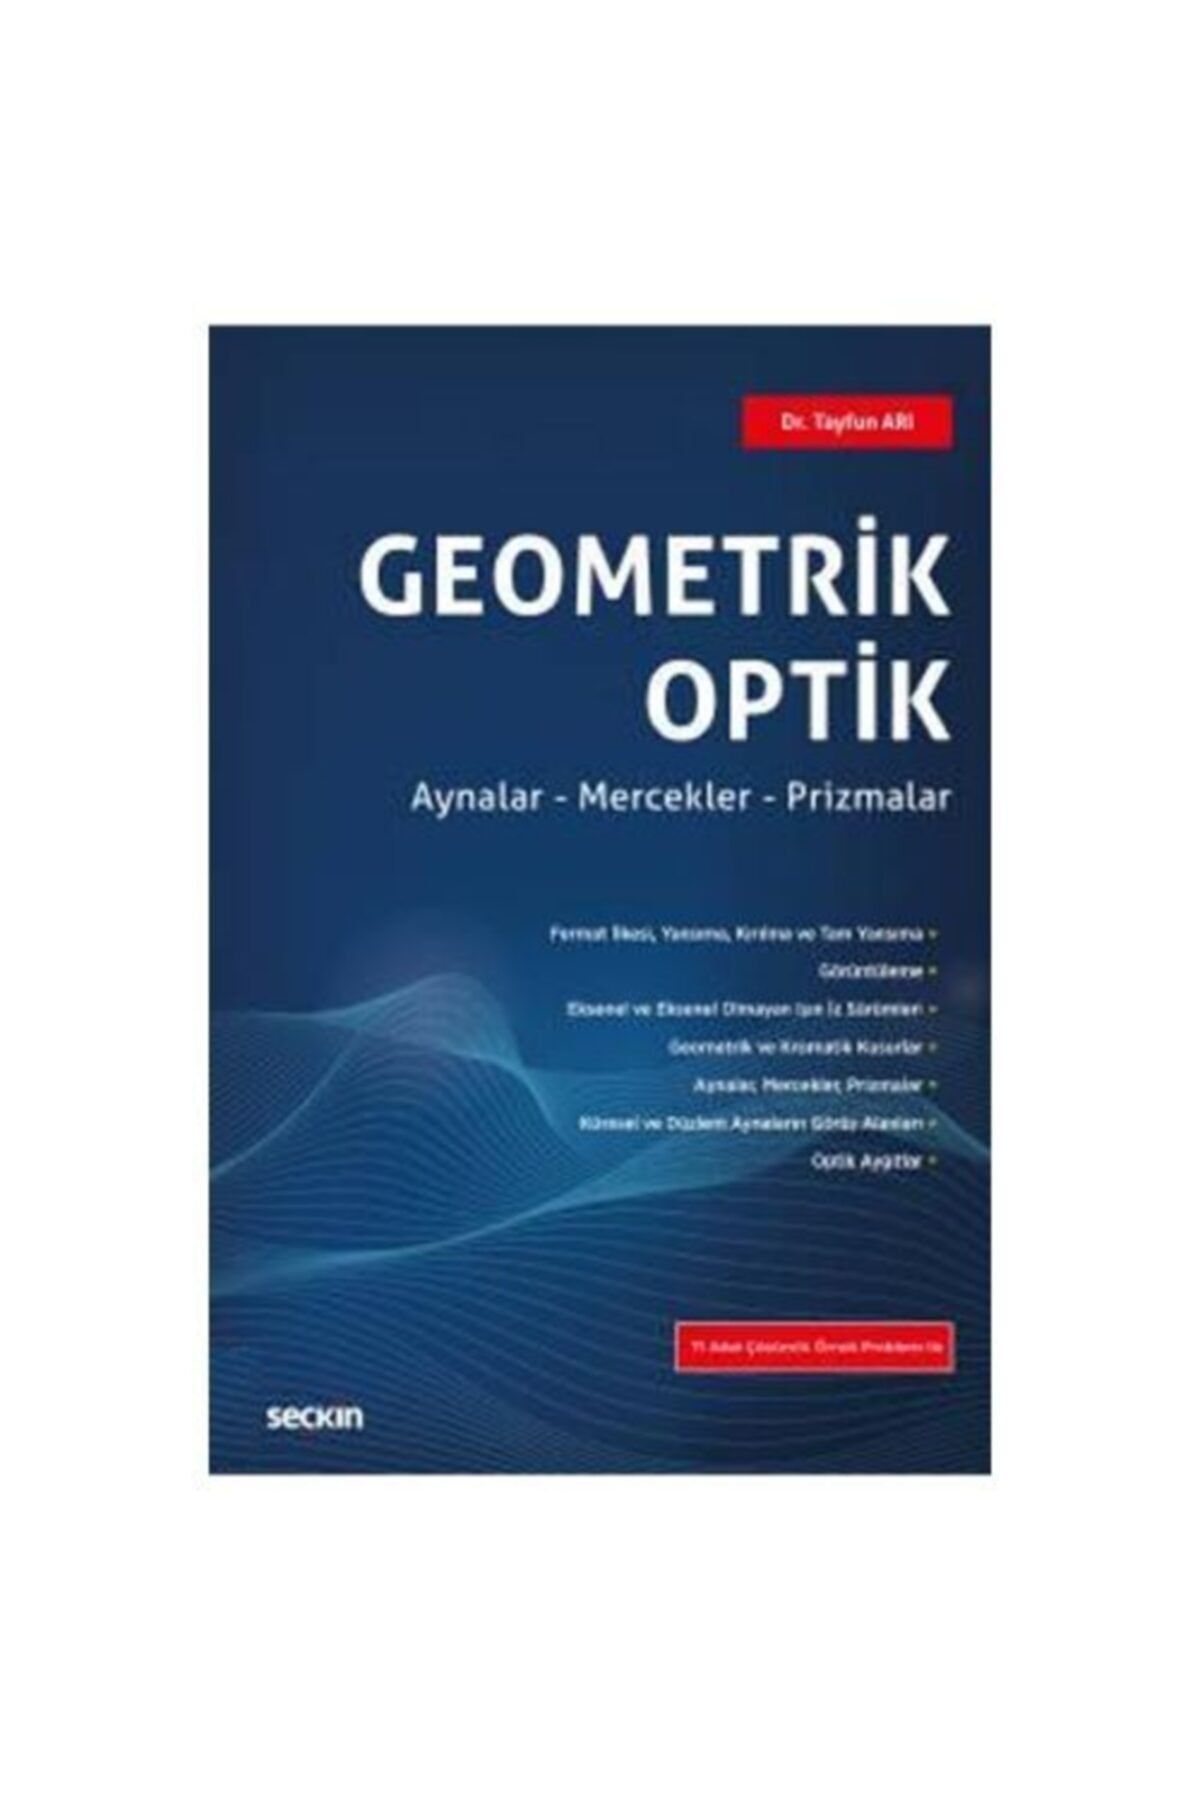 Seçkin Yayıncılık Geometrik Optik (T.ari) Tayfun Ari 1 2019/06